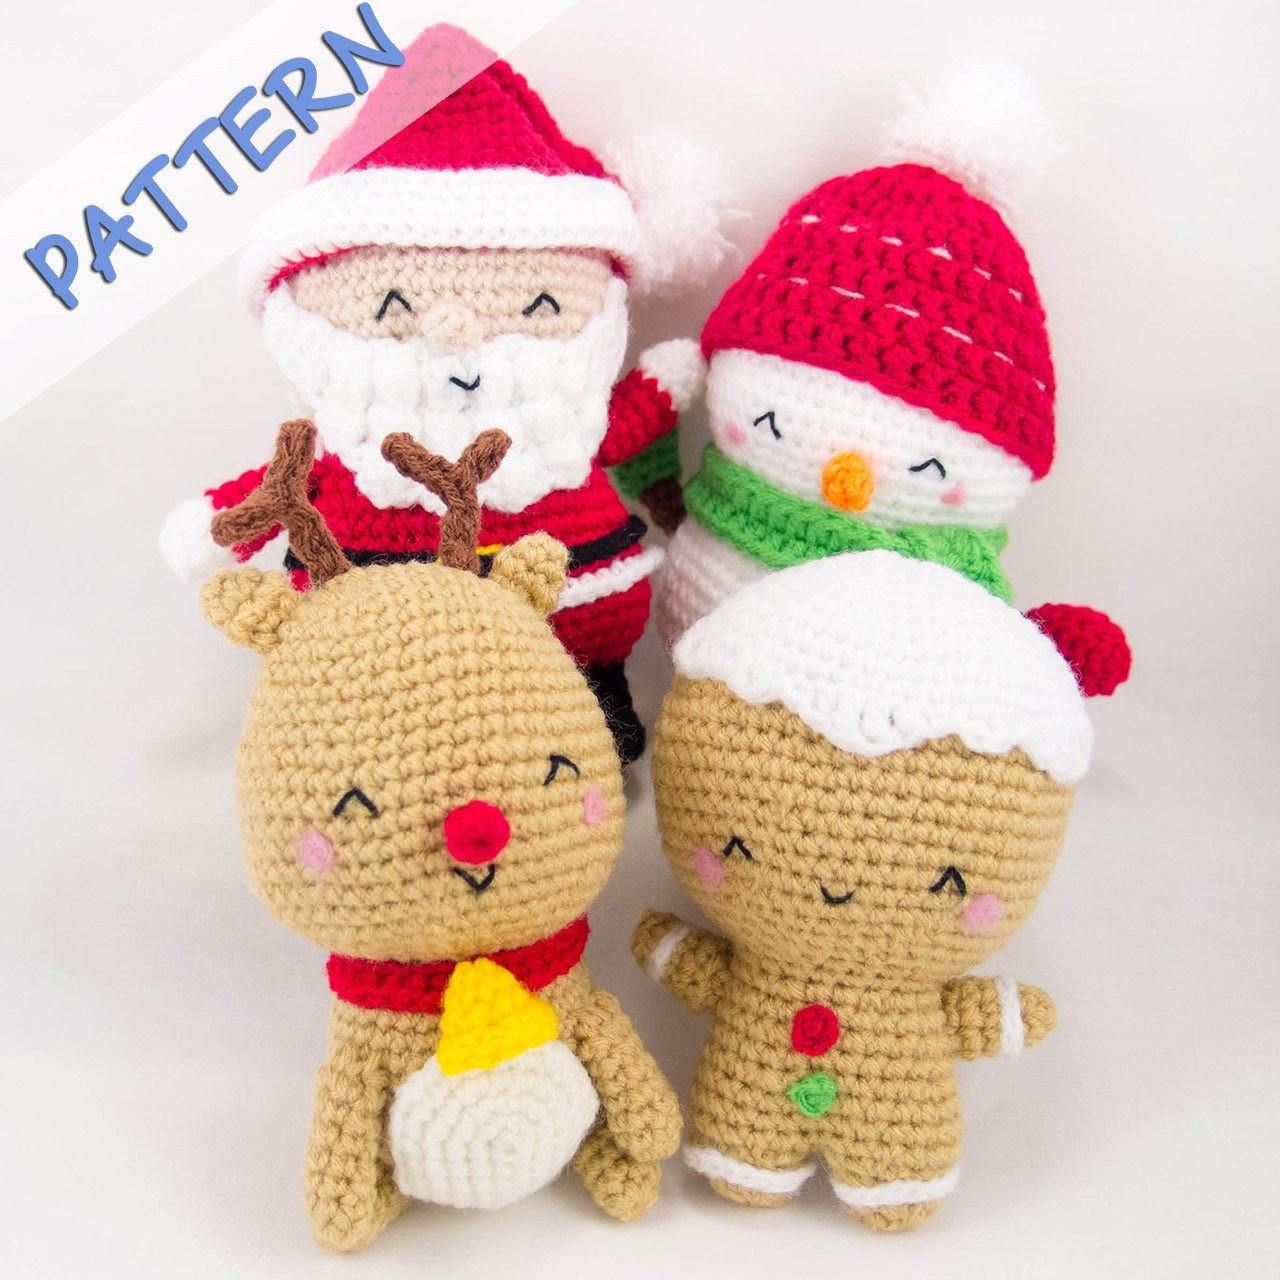 Christmas Crochet Patterns - Set of 4 (Snowman, Gingerbread Man